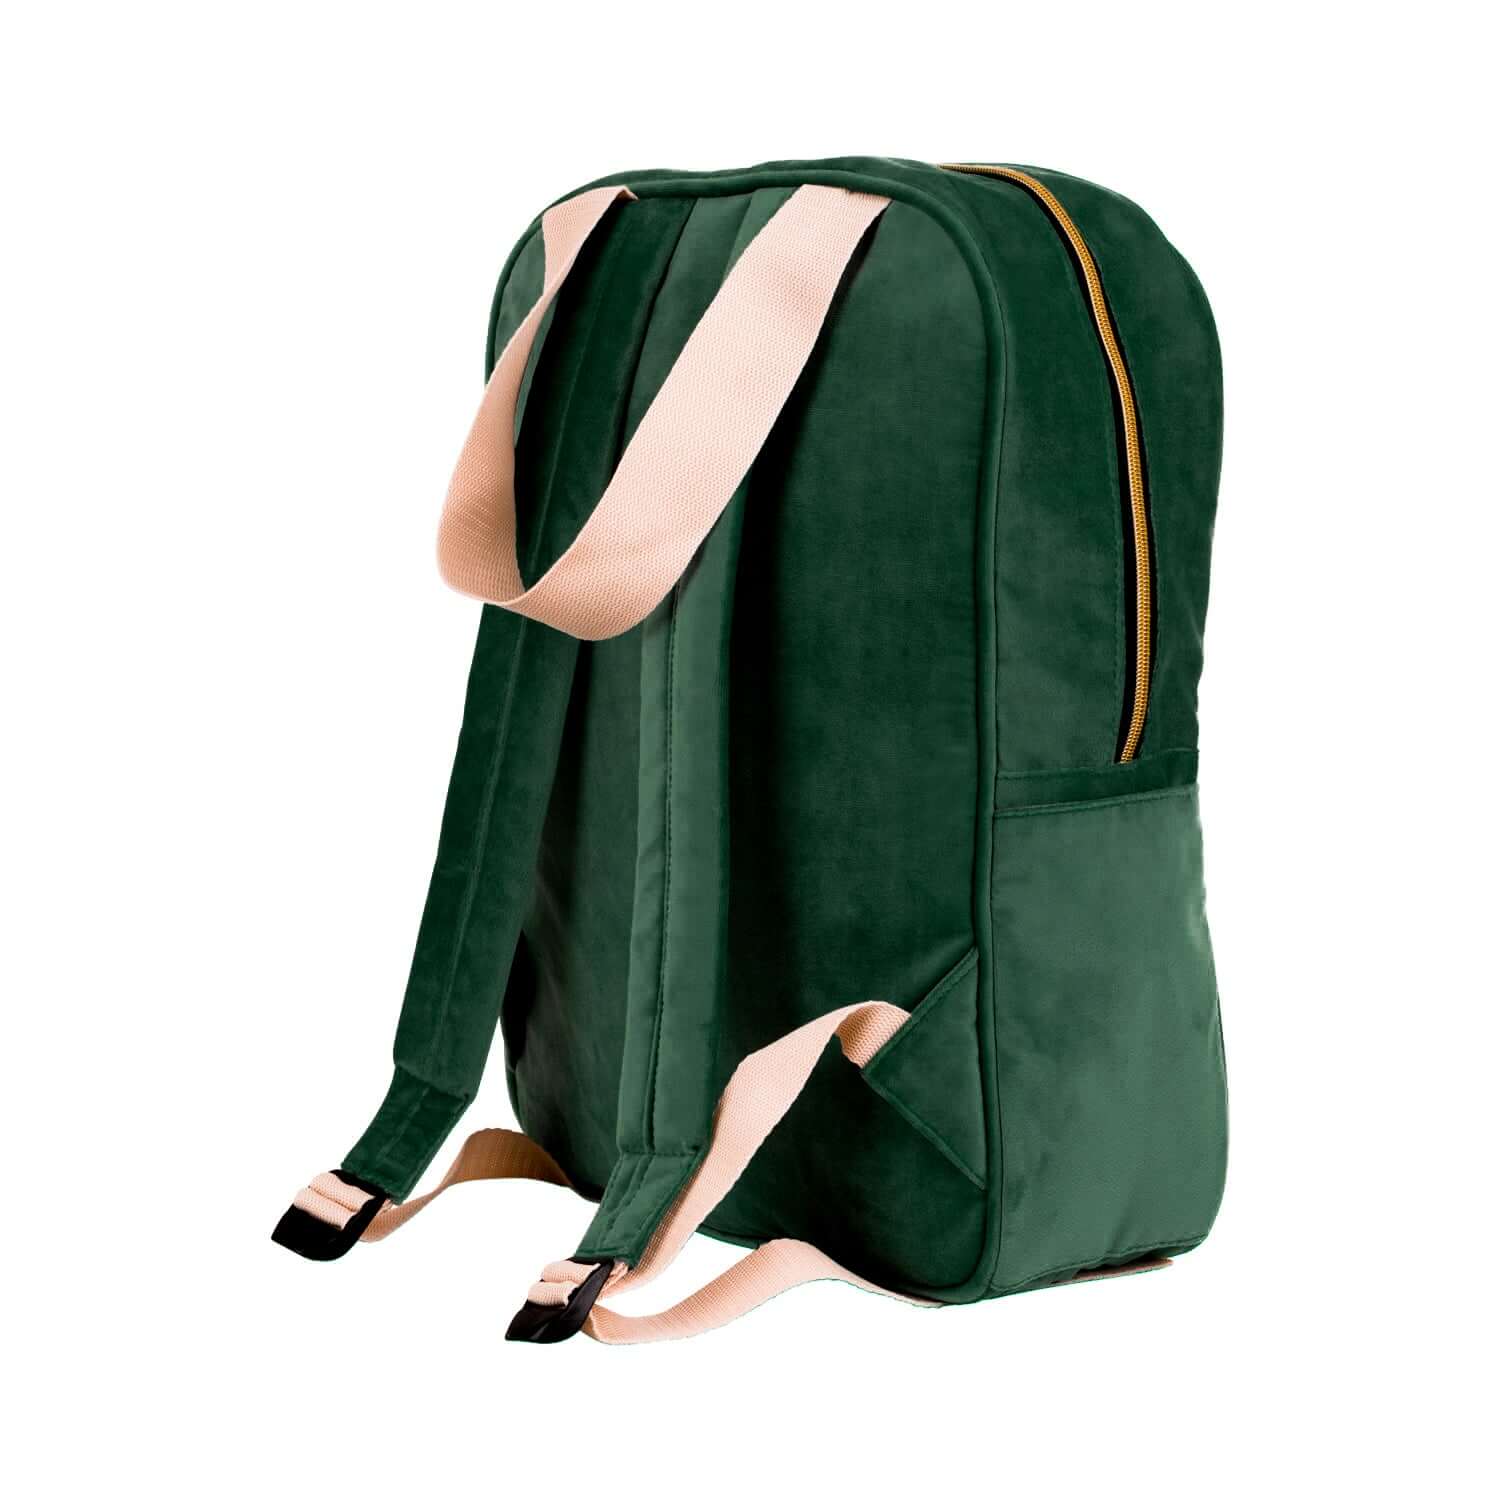 green velvet backpack by bettys home best backpack for plane travel 